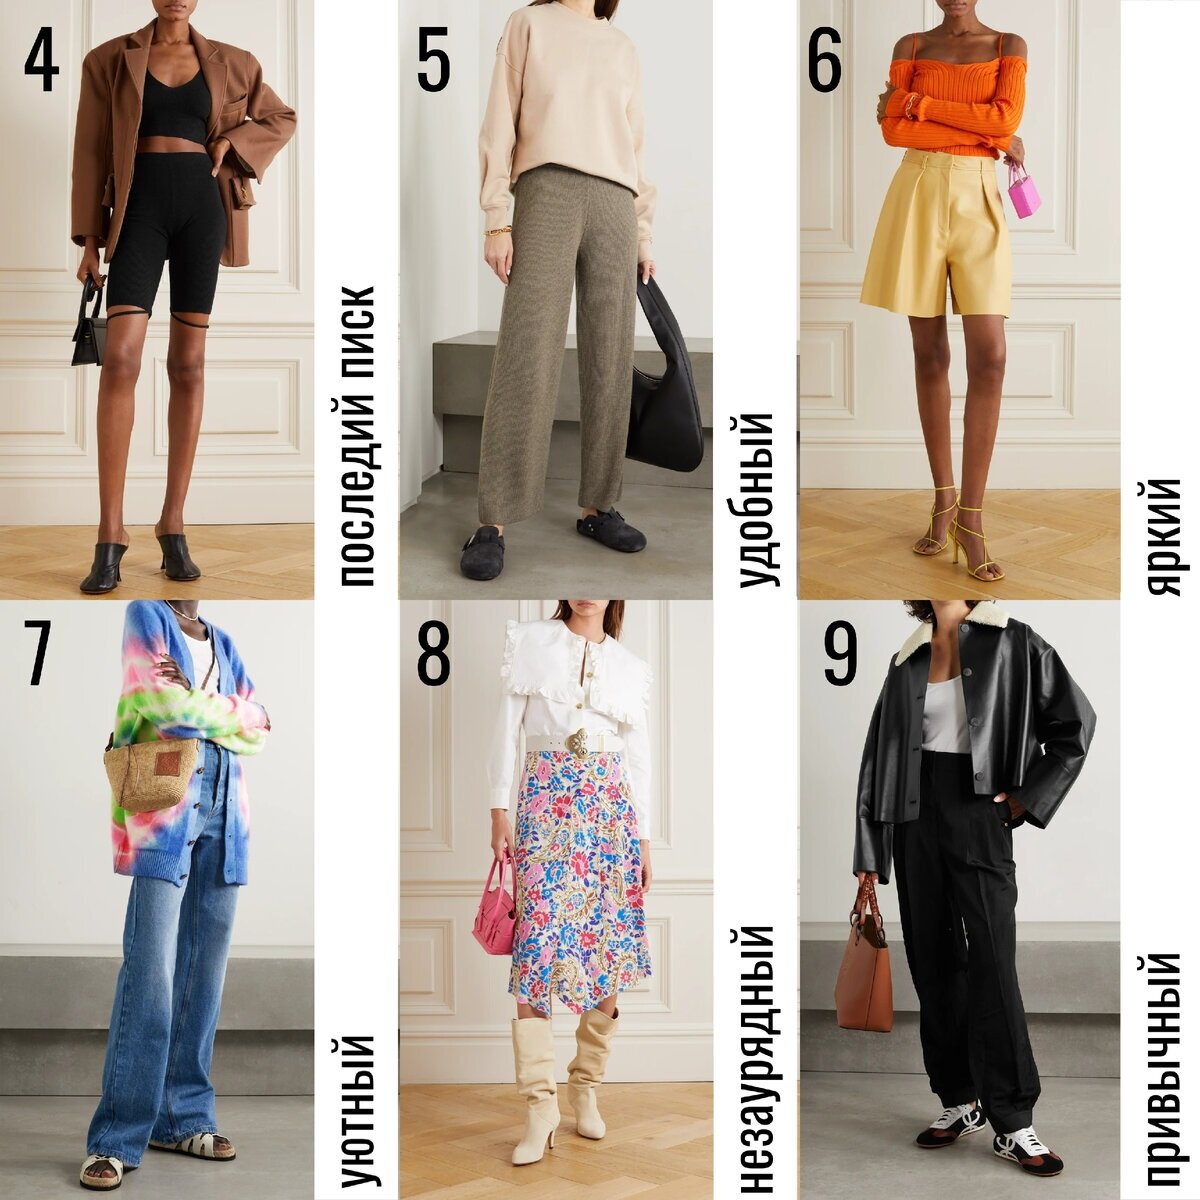 Как одеваться стильно и недорого